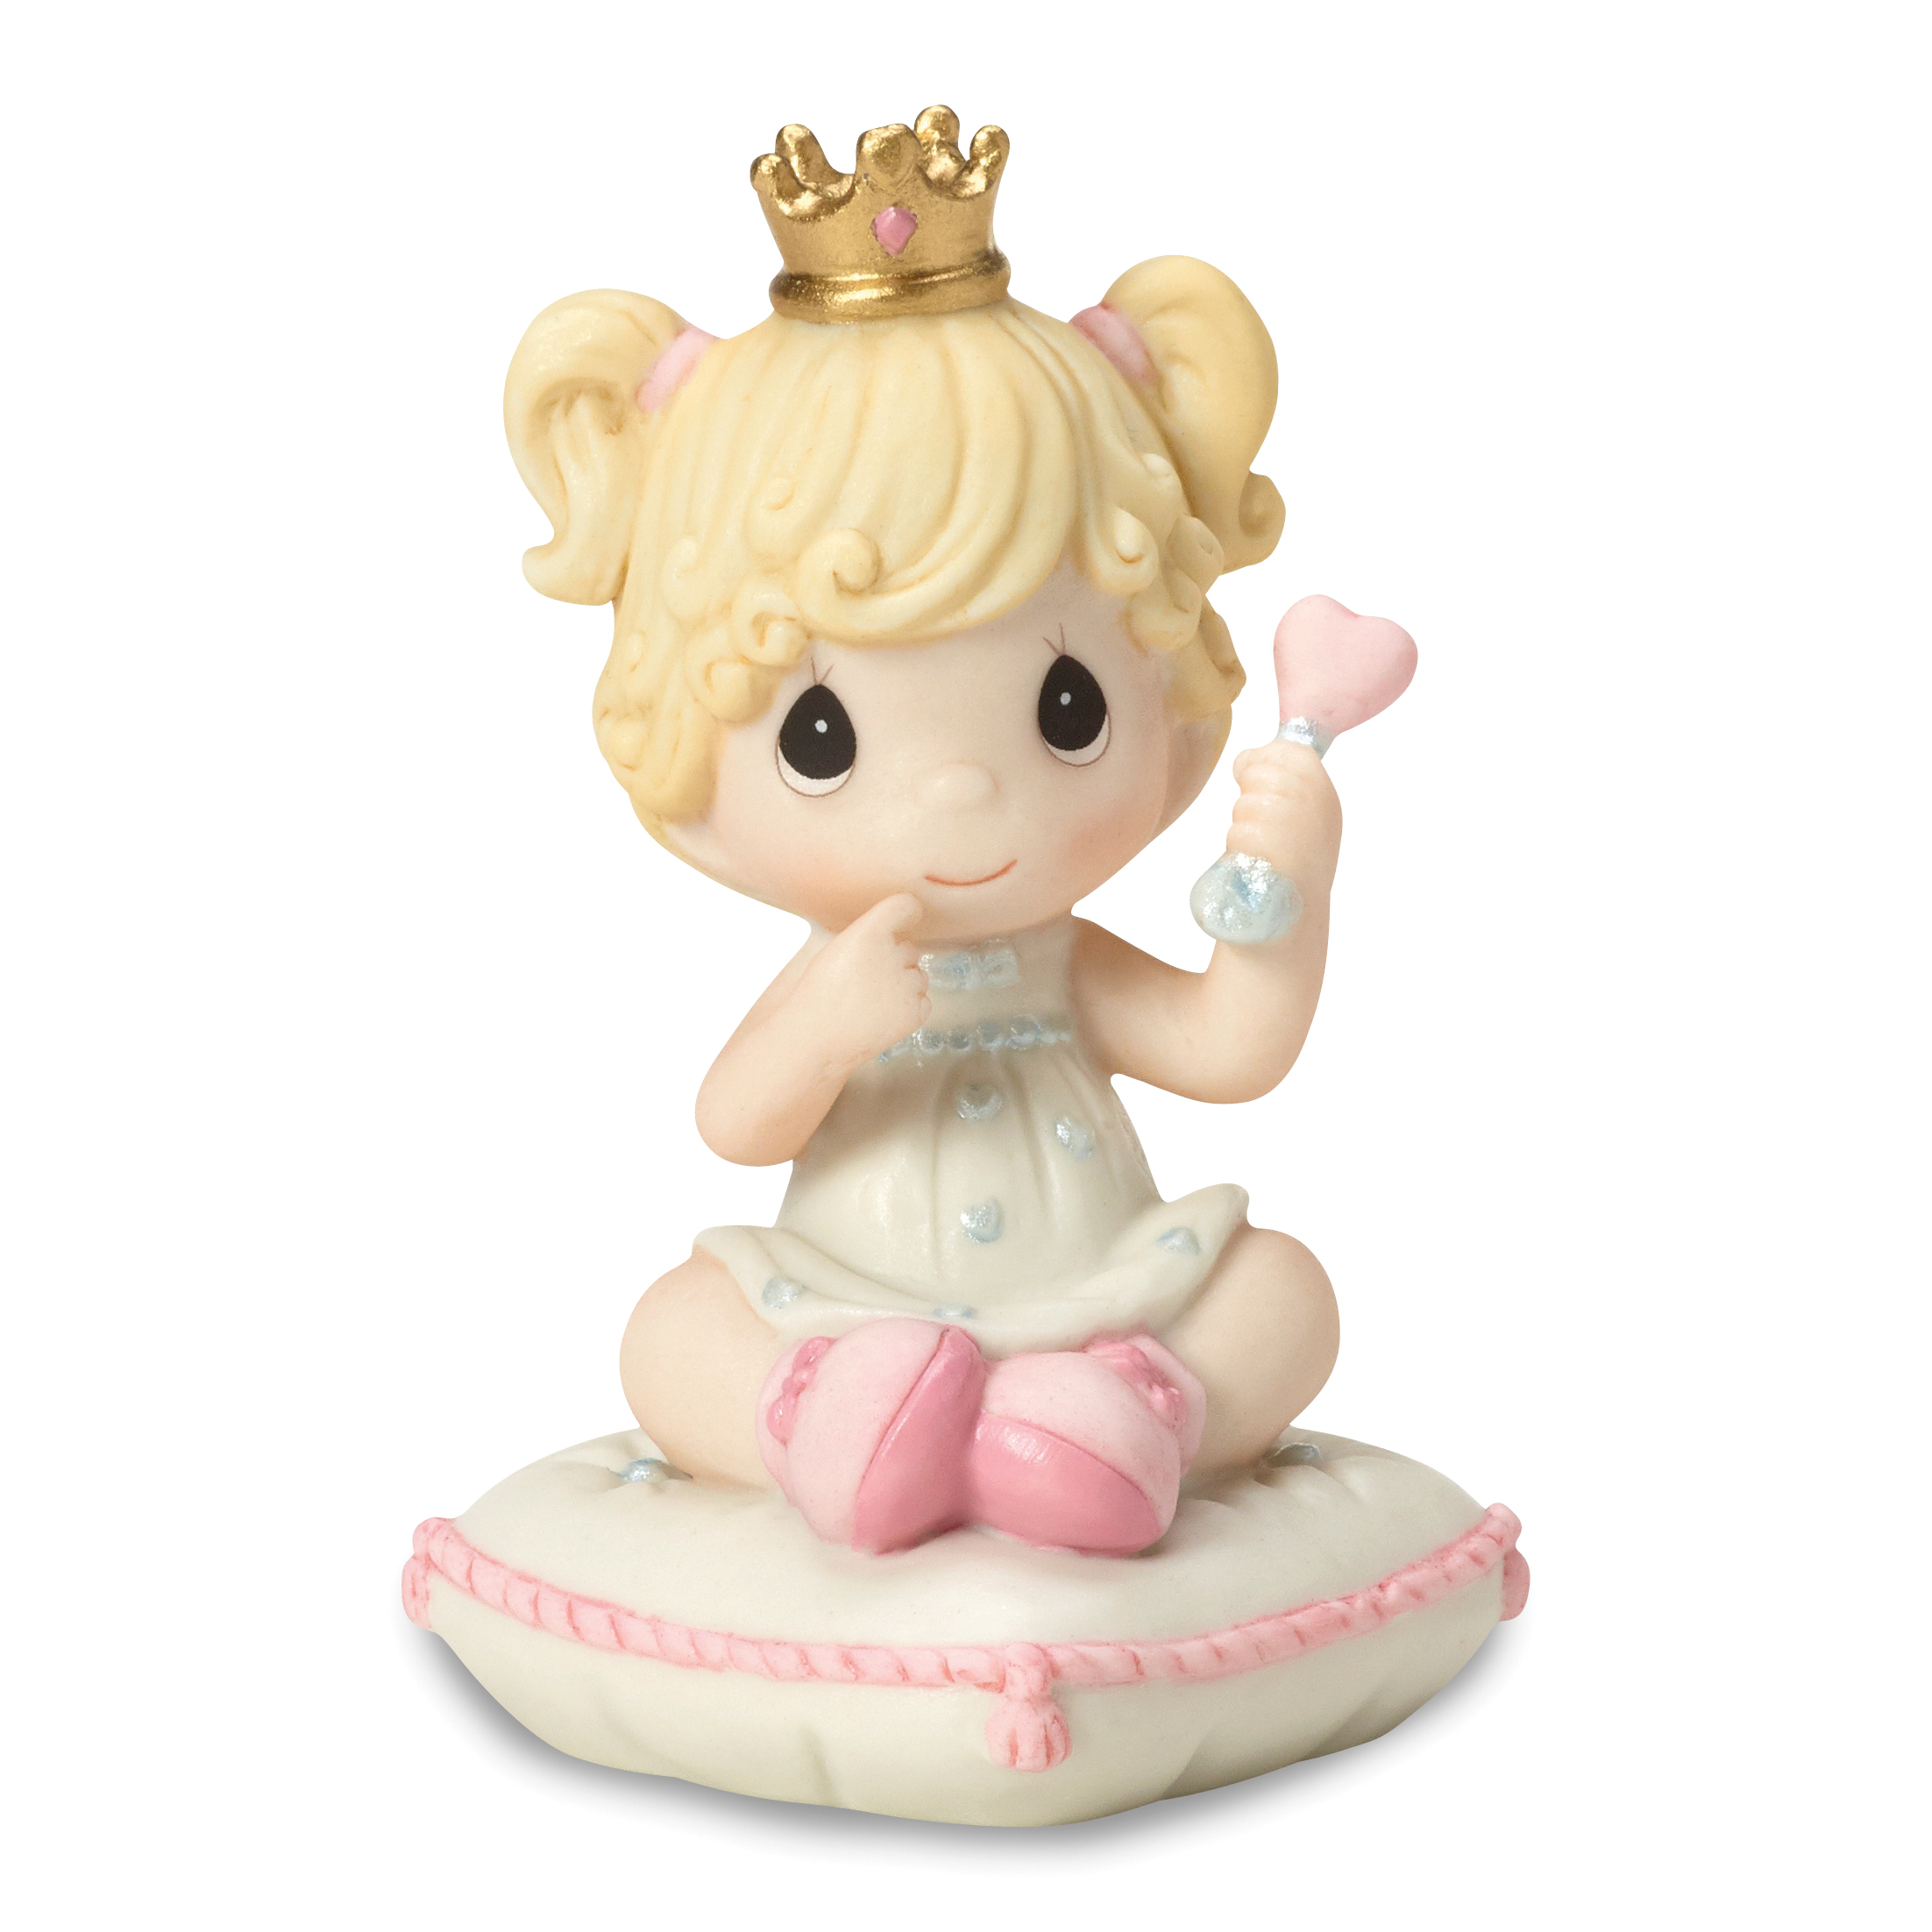 Precious Moments Porcelain Lil' Princess Figurine